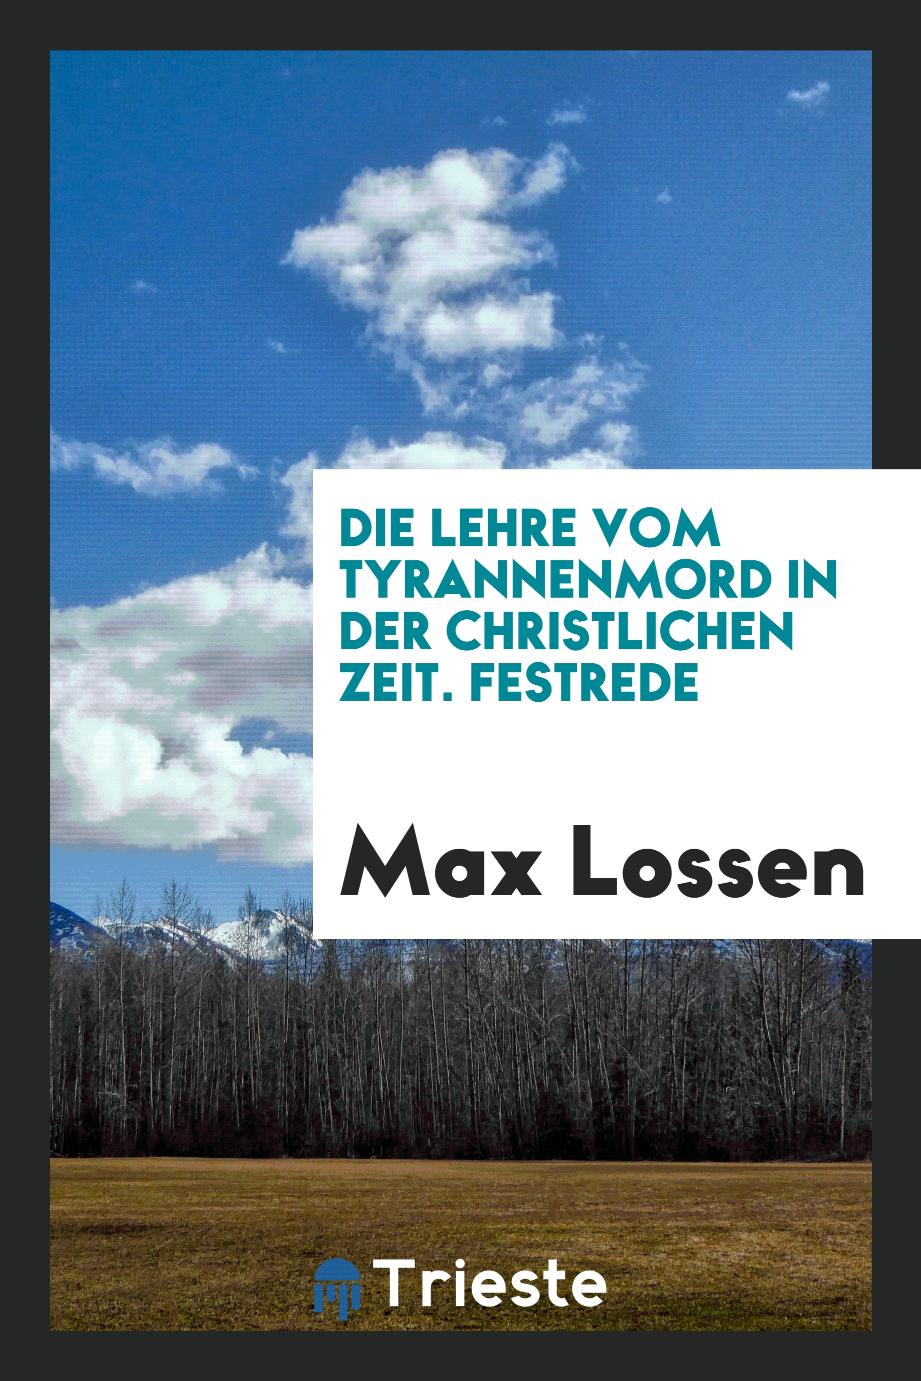 Max Lossen - Die Lehre vom Tyrannenmord in der Christlichen Zeit. Festrede